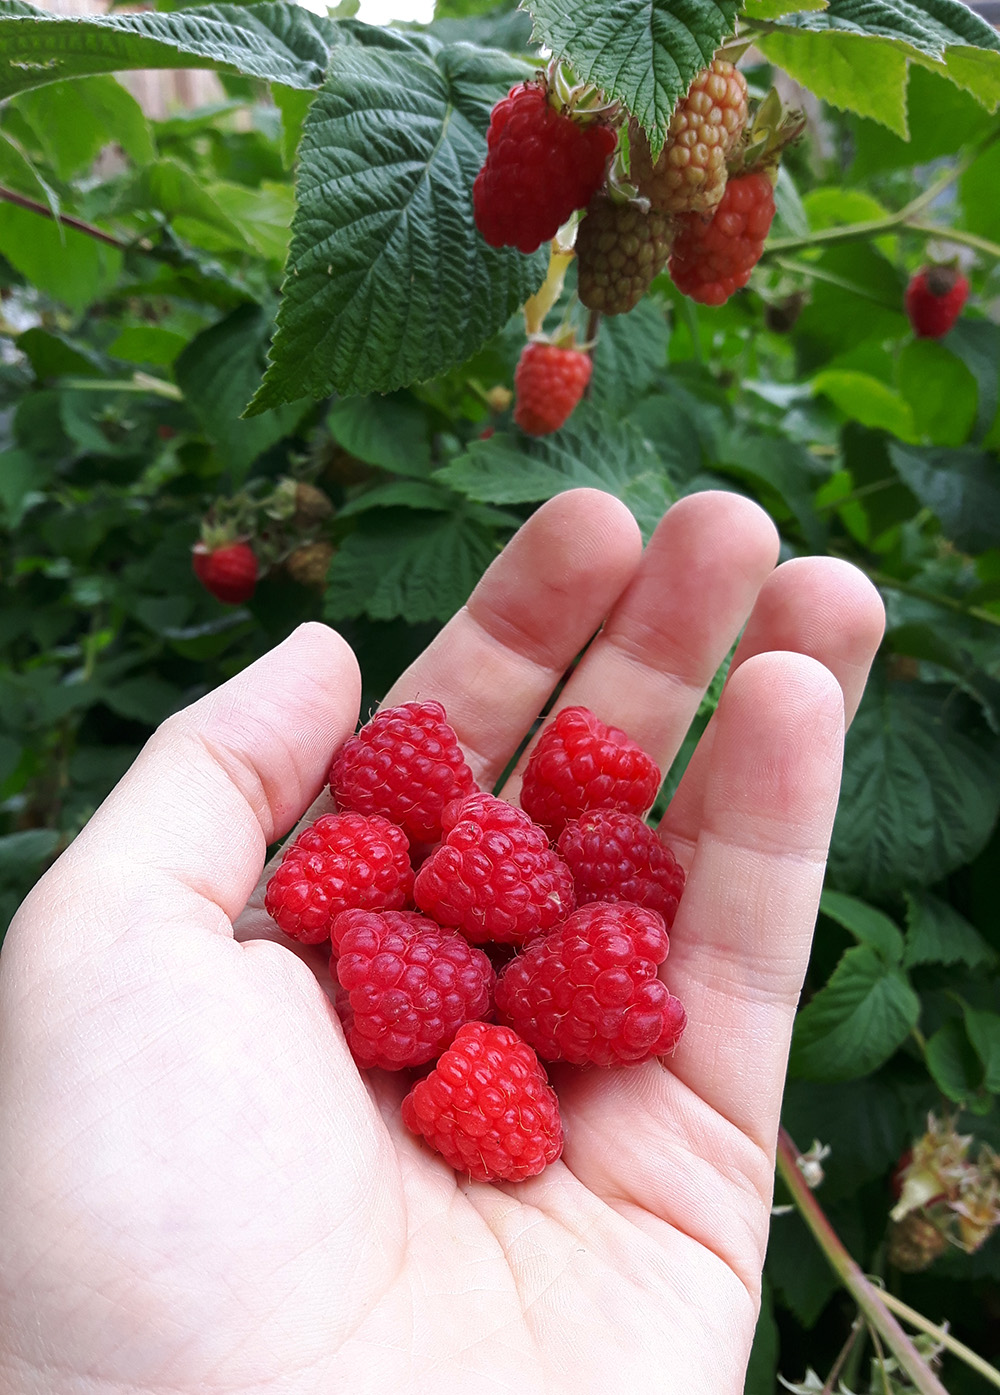 Picking Raspberries in Kelowna, BC